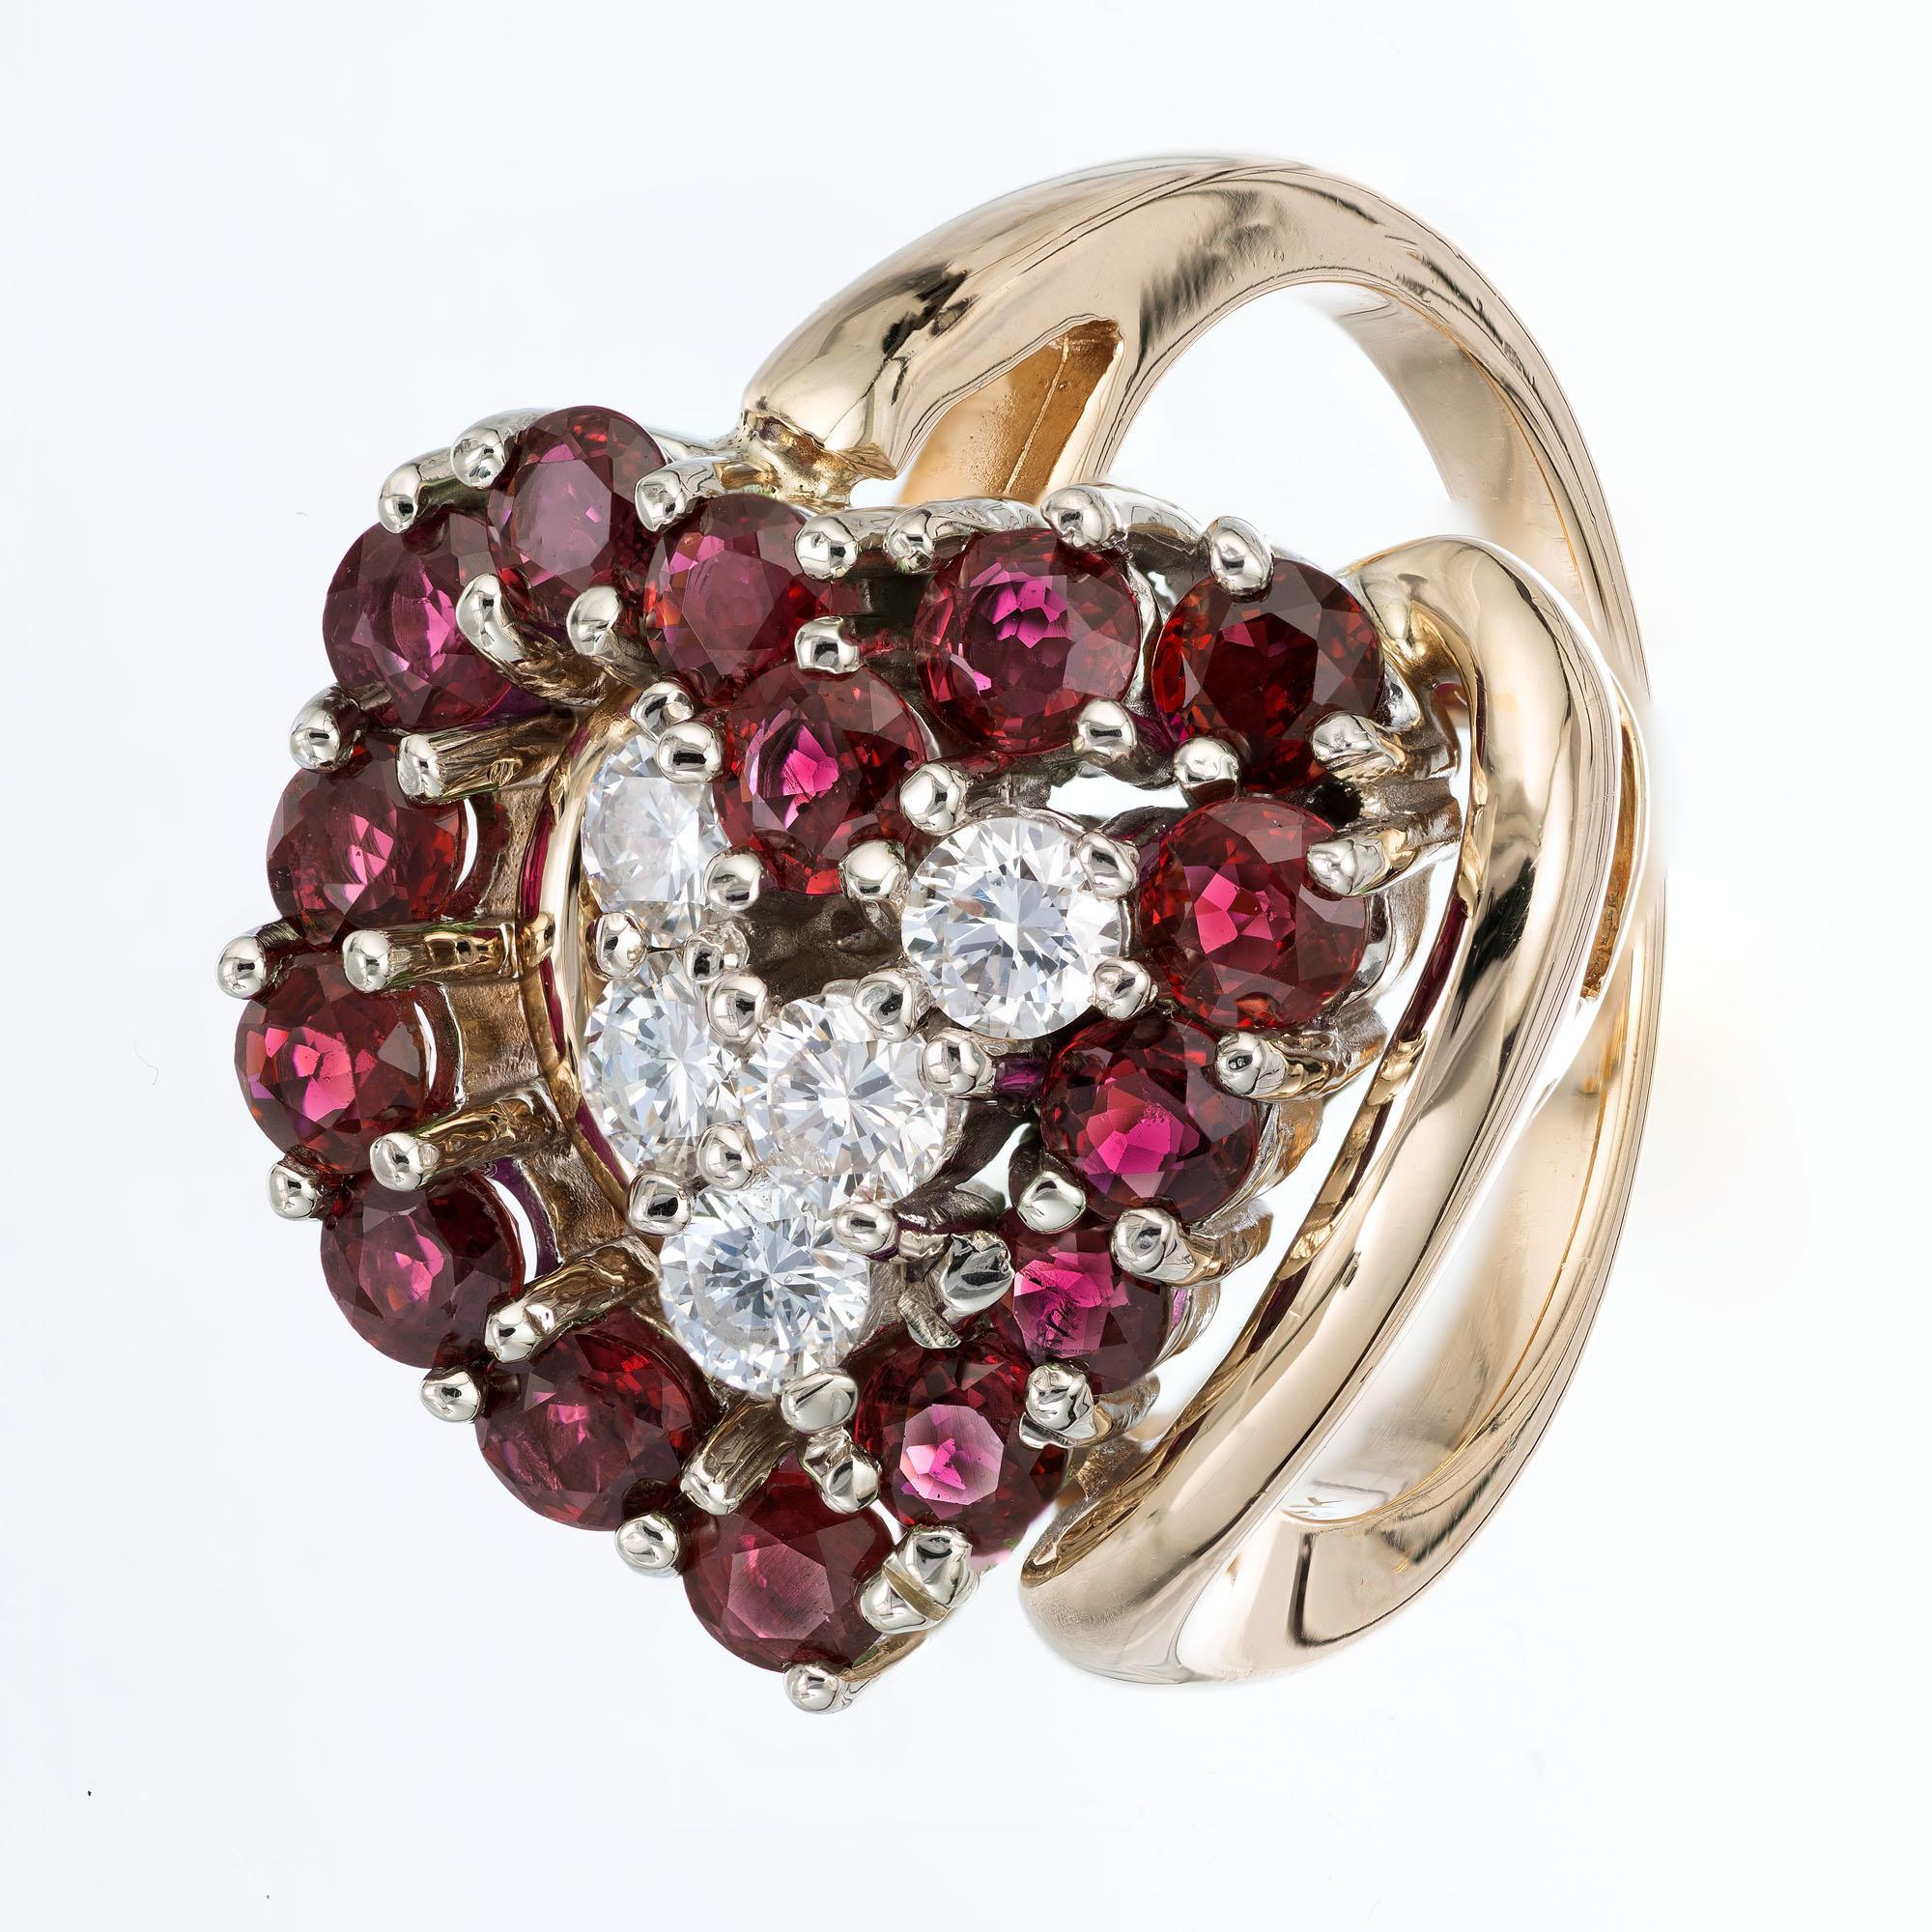  Herzförmiger Ring mit Granat und Diamant. Herzform auf seiner Seite Design aus runden Granaten mit runden Brillantschliff Akzent Diamanten, in einem 14k Gelbgold Fassung.  

 15 runde Rhodolith-Granate, 3,0 mm 
 5 runde Diamanten im